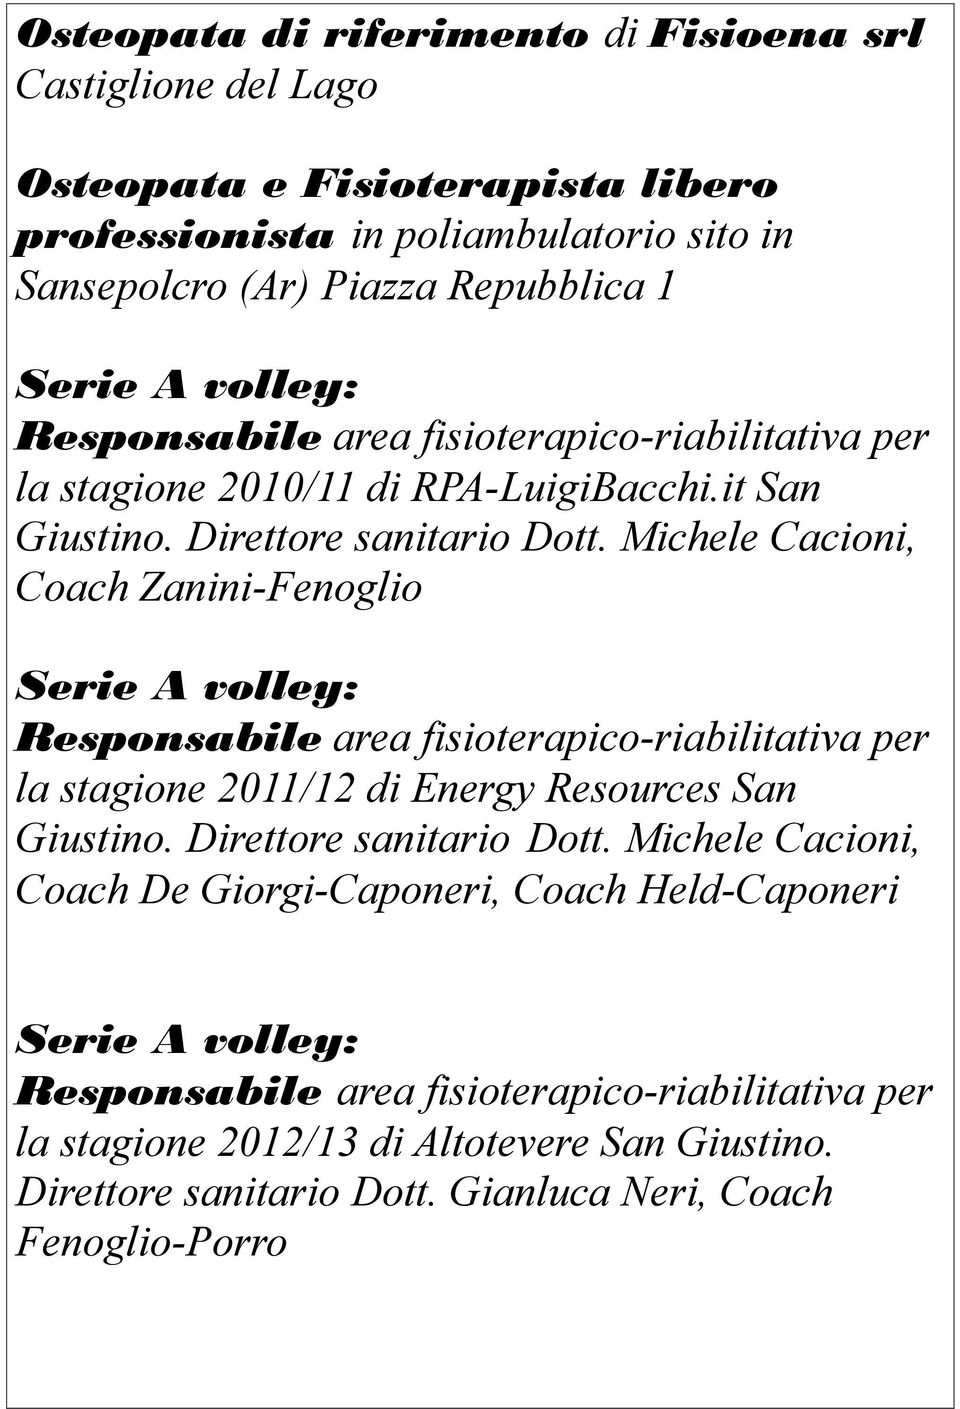 Michele Cacioni, Coach Zanini-Fenoglio Serie A volley: Responsabile area fisioterapico-riabilitativa per la stagione 2011/12 di Energy Resources San Giustino. Direttore sanitario Dott.